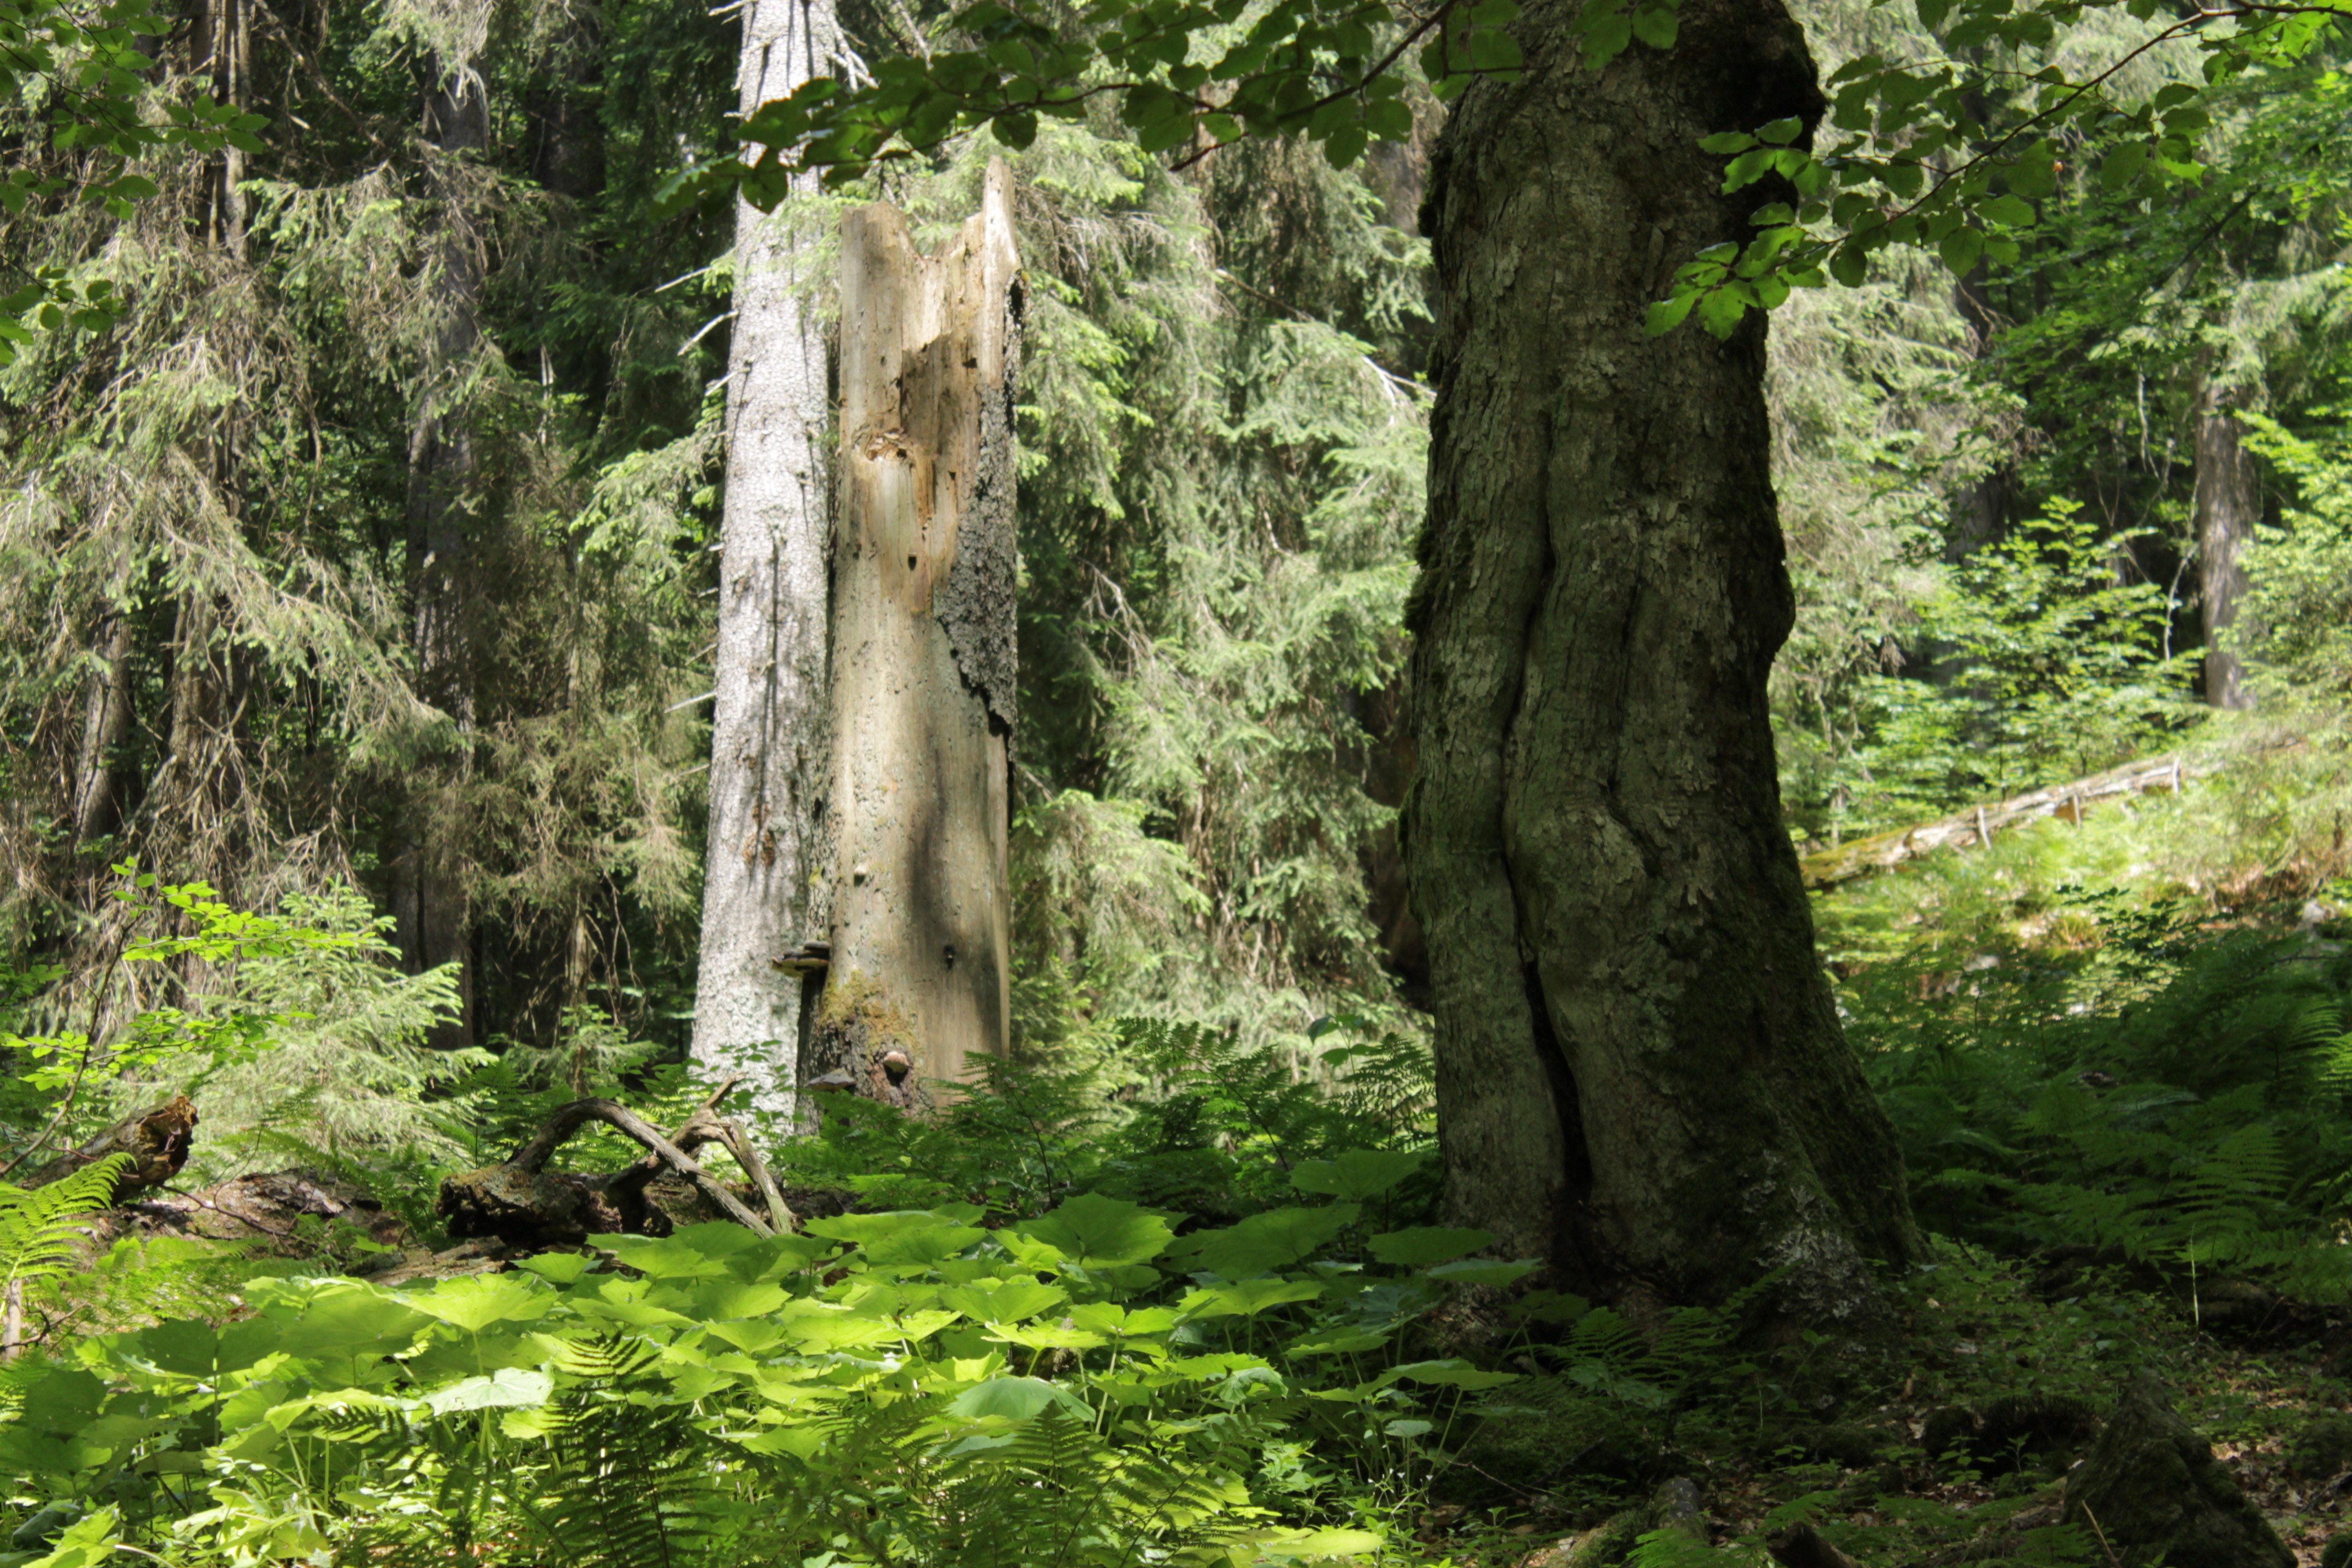 Vodou podmíněné světliny v lese představují ideální místa, kde mohou být biotopové stromy ponechávány k dožití. Je zde lépe splněno oslunění a svým umístěním nepředstavují výraznou újmu lesnickému provozu. V žádném případě by tato místa neměla být cíleně zalesňována. Foto Radek Bače